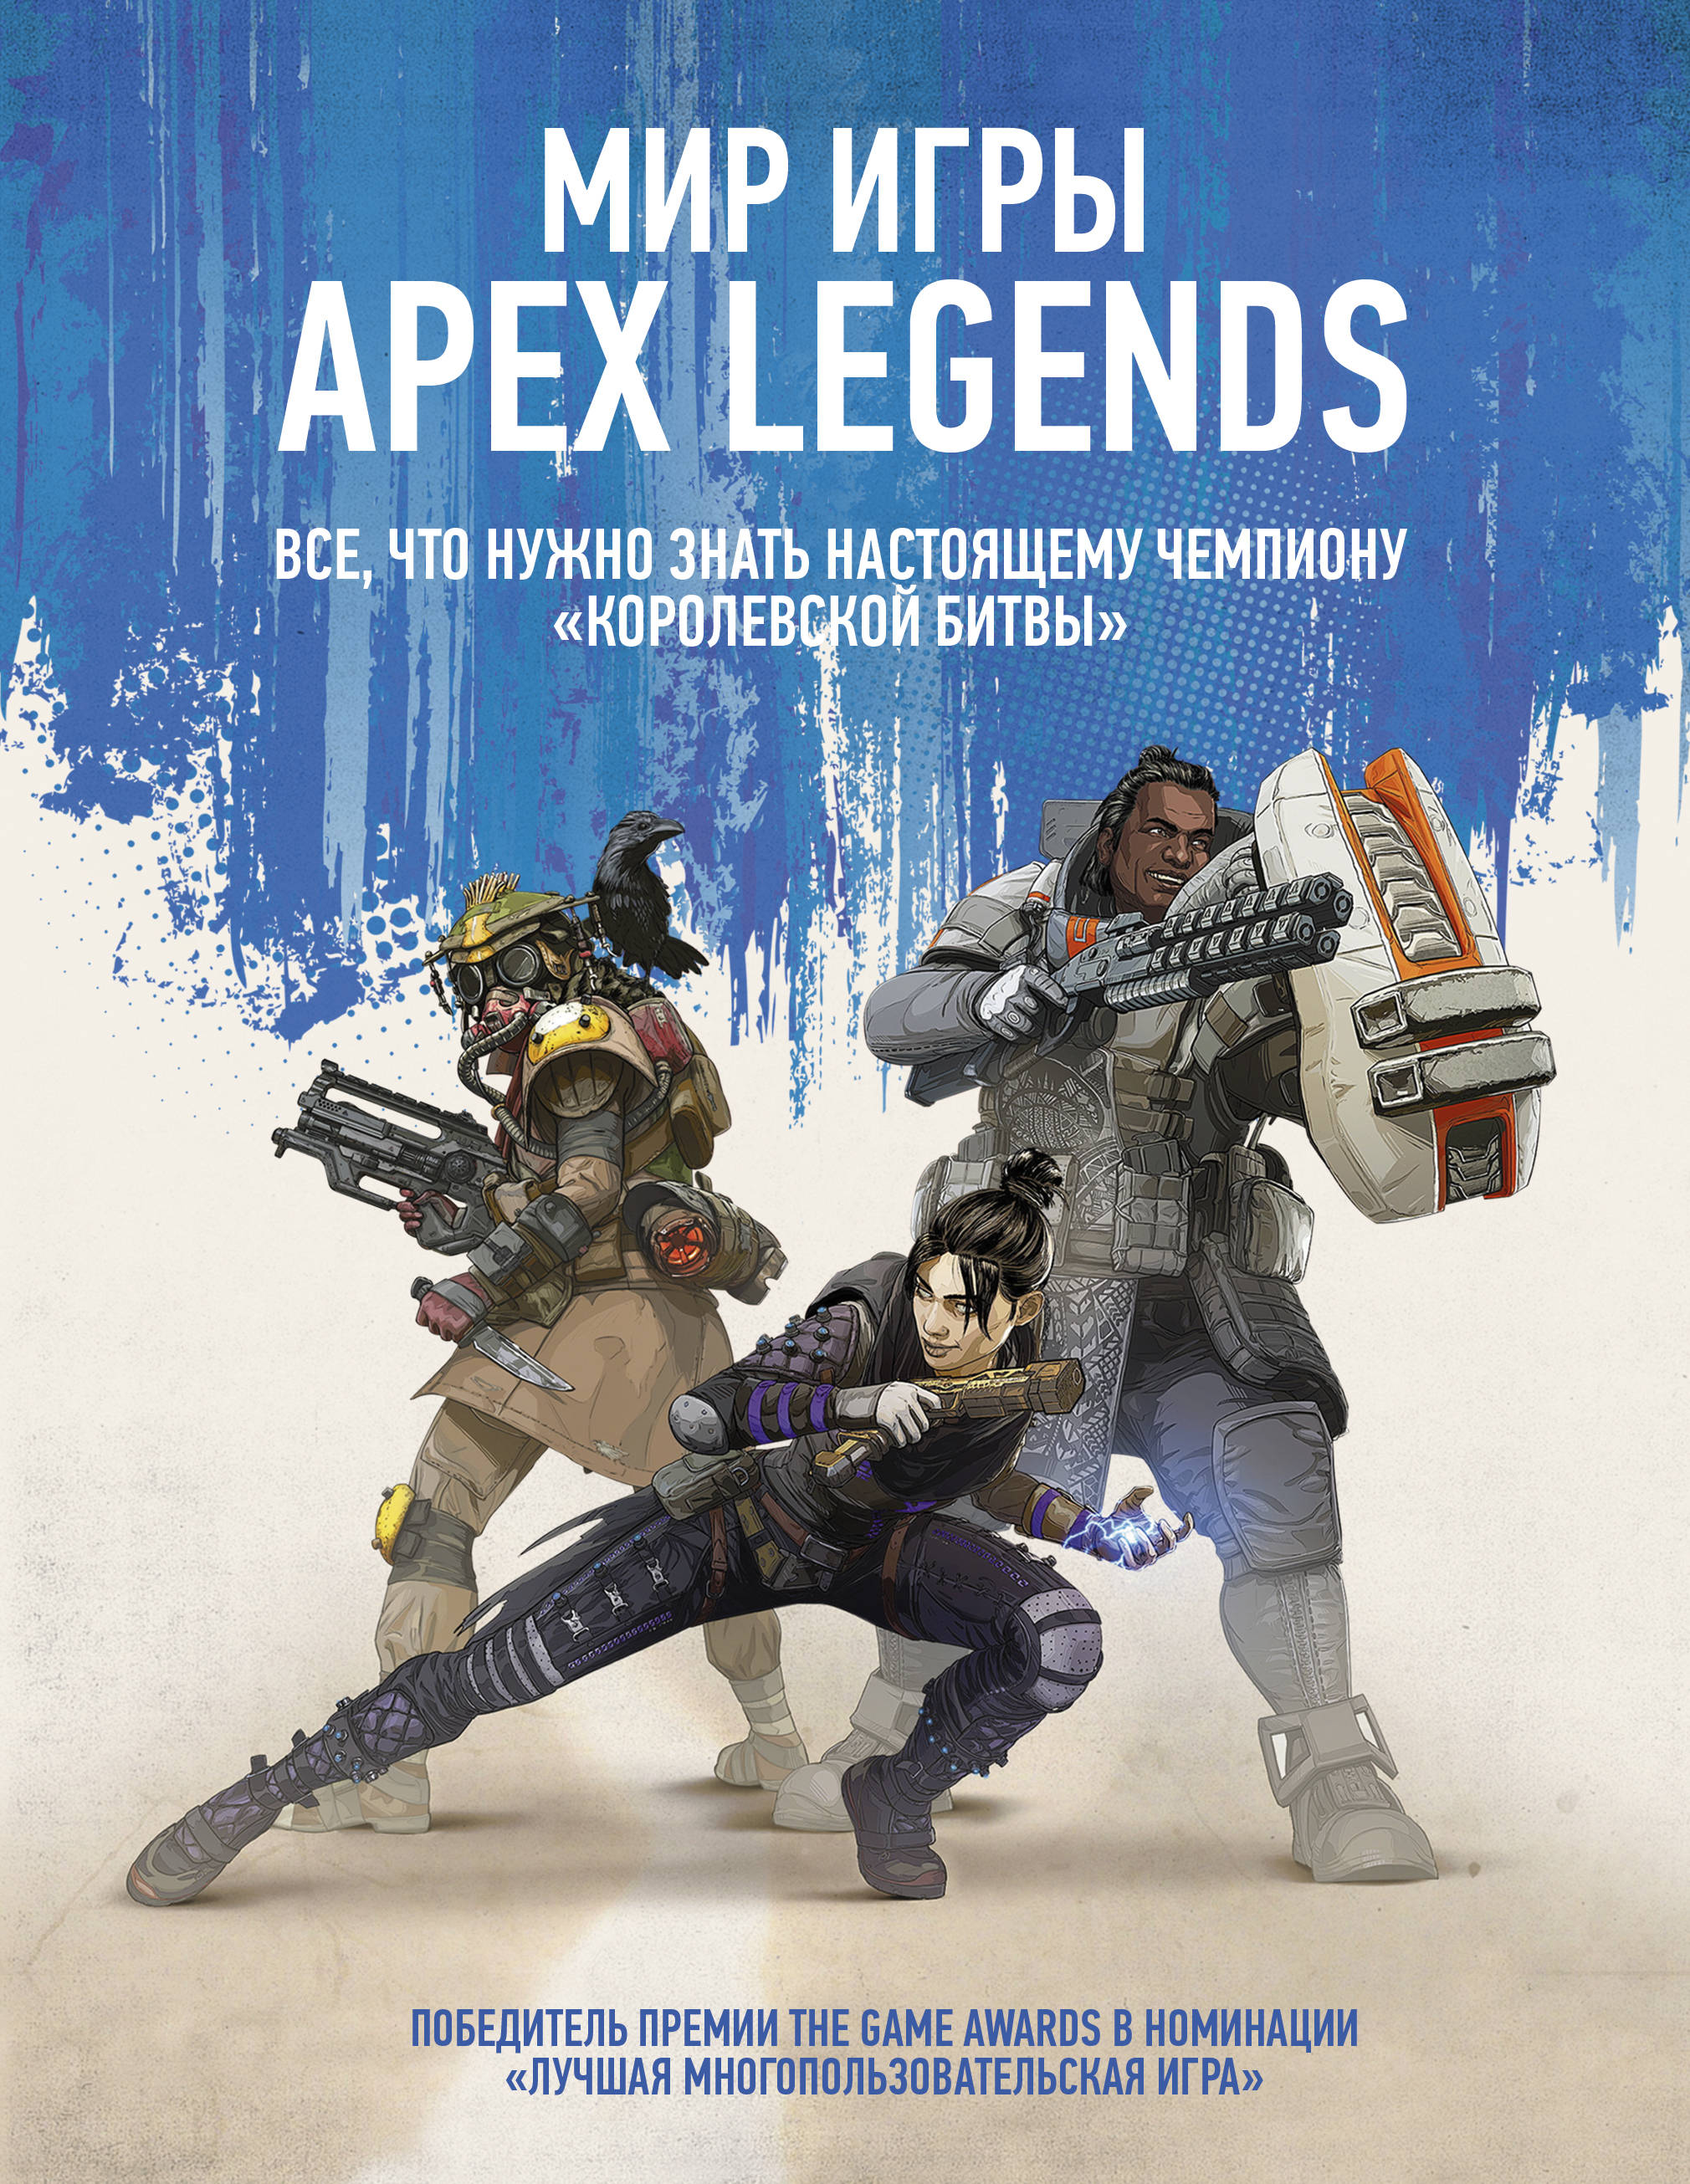   Apex Legends